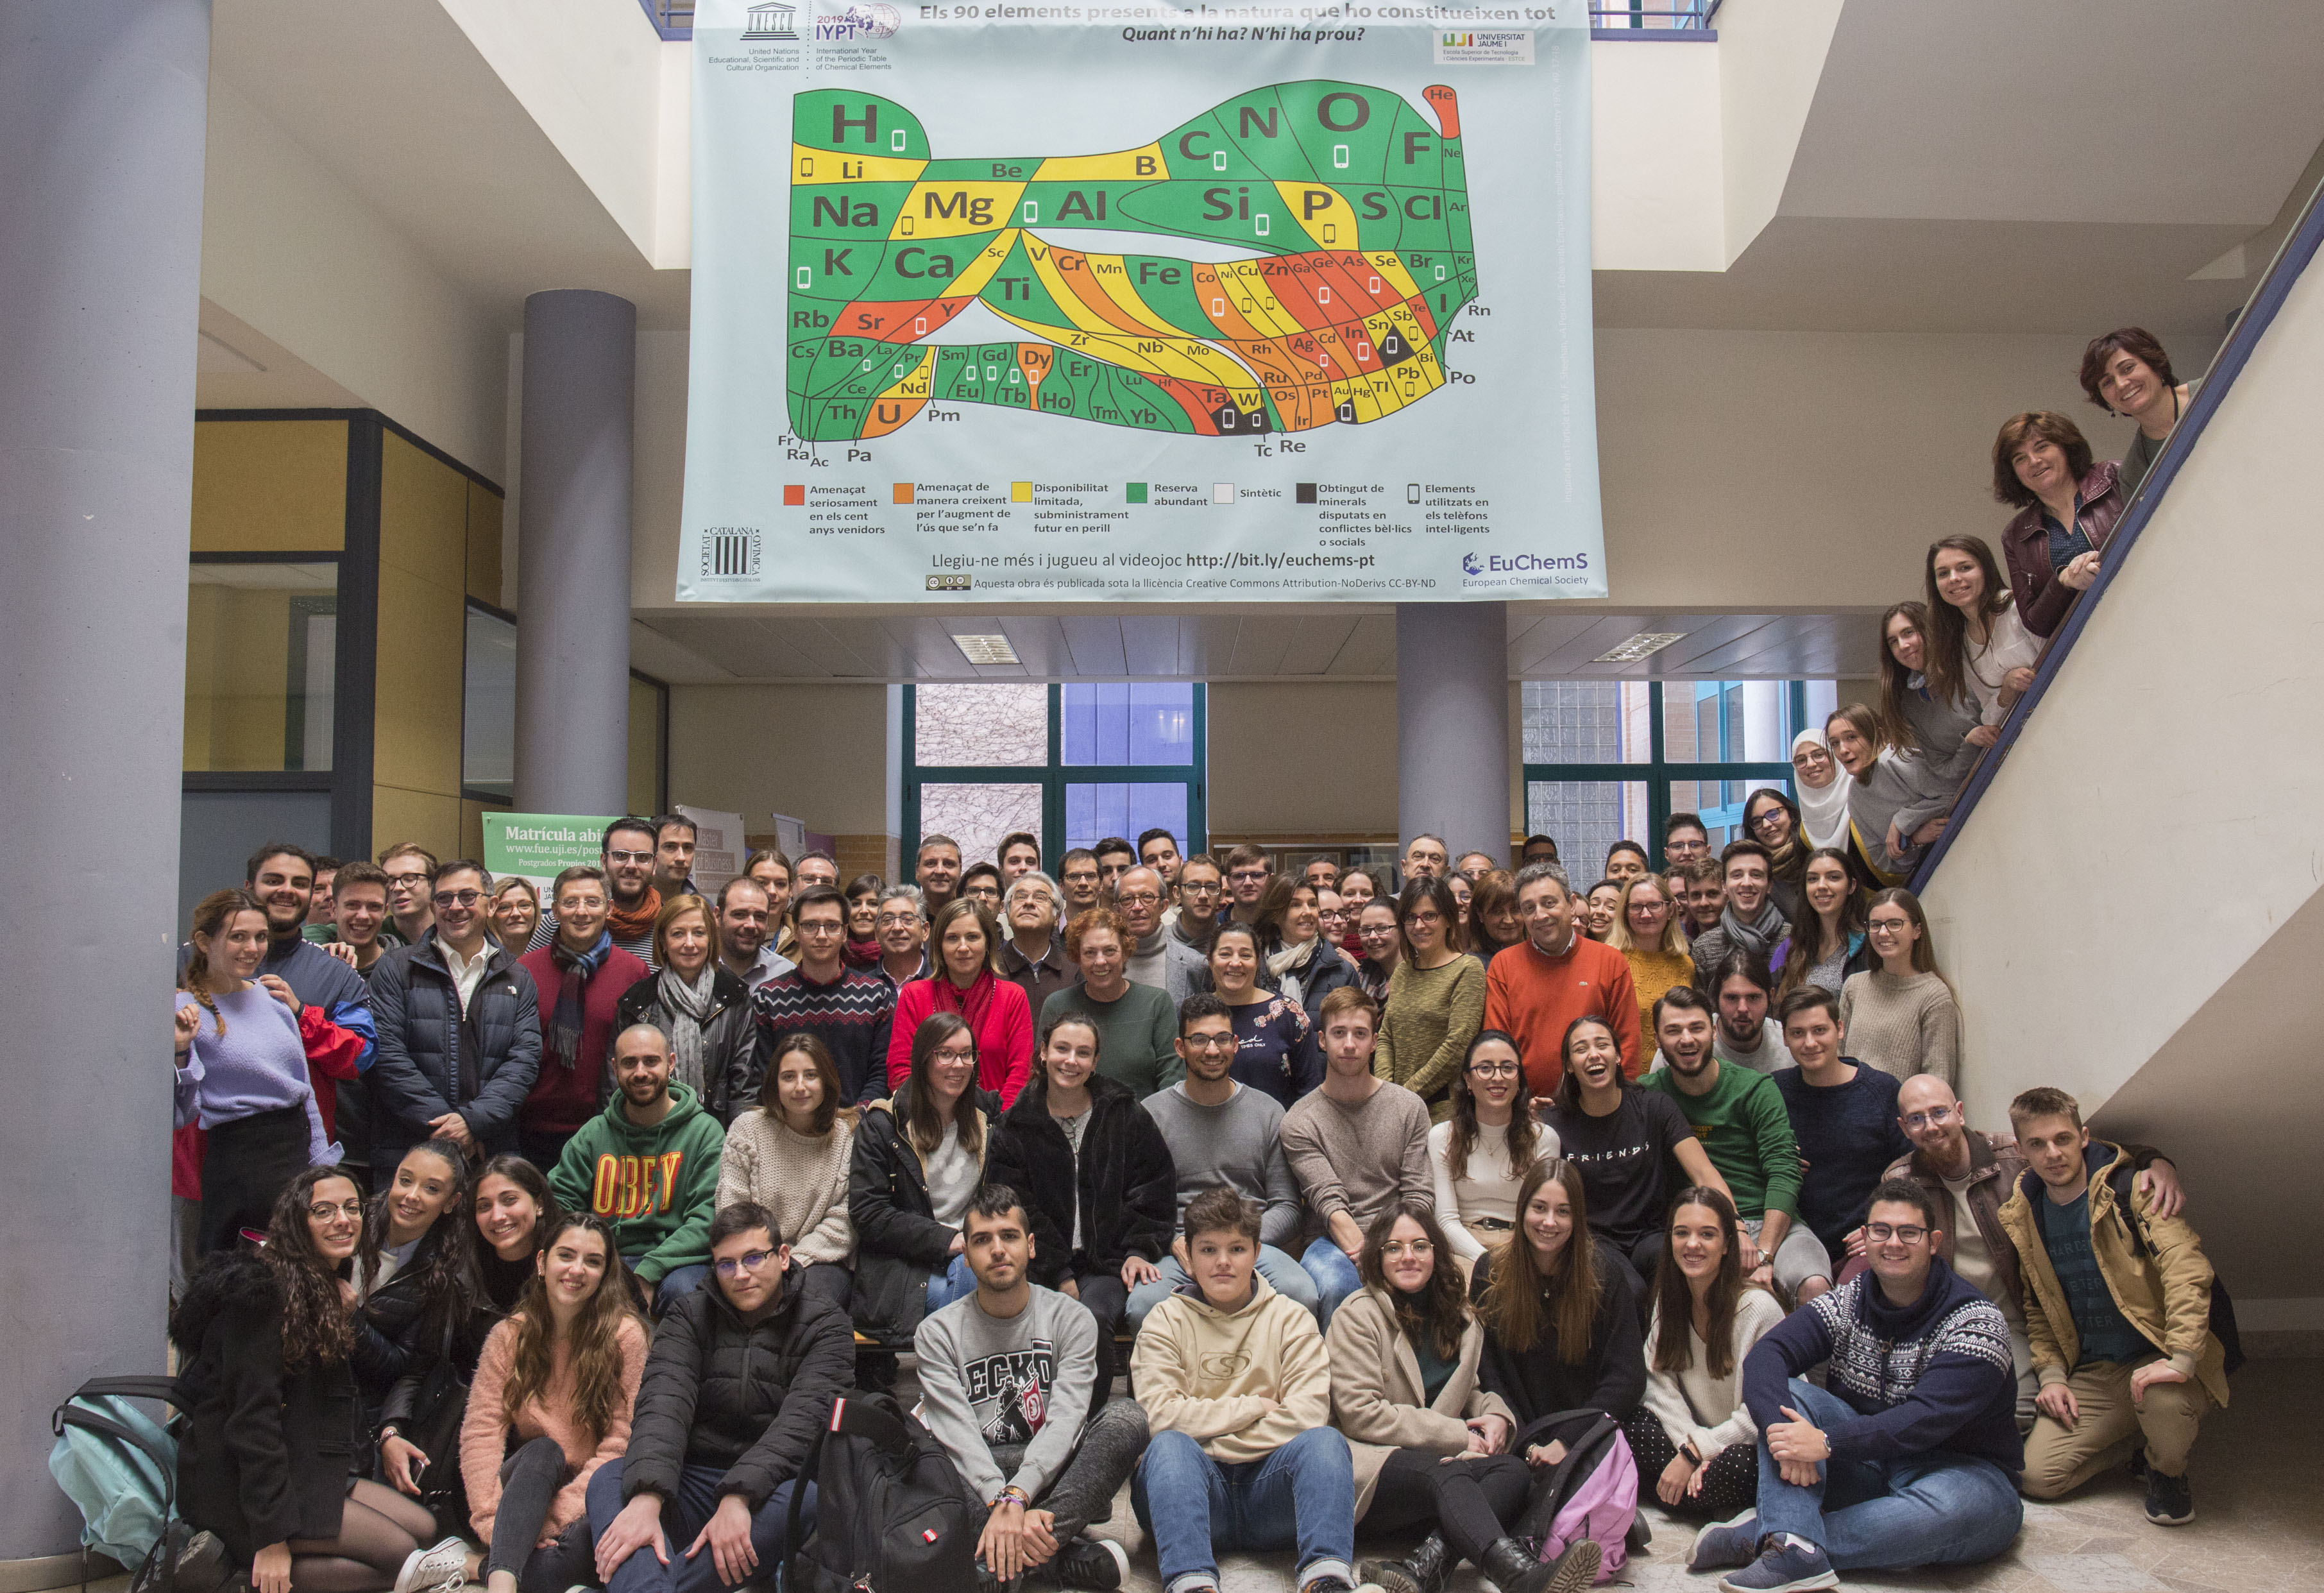 University Jaume, Spain, celebrating the IYPT2019